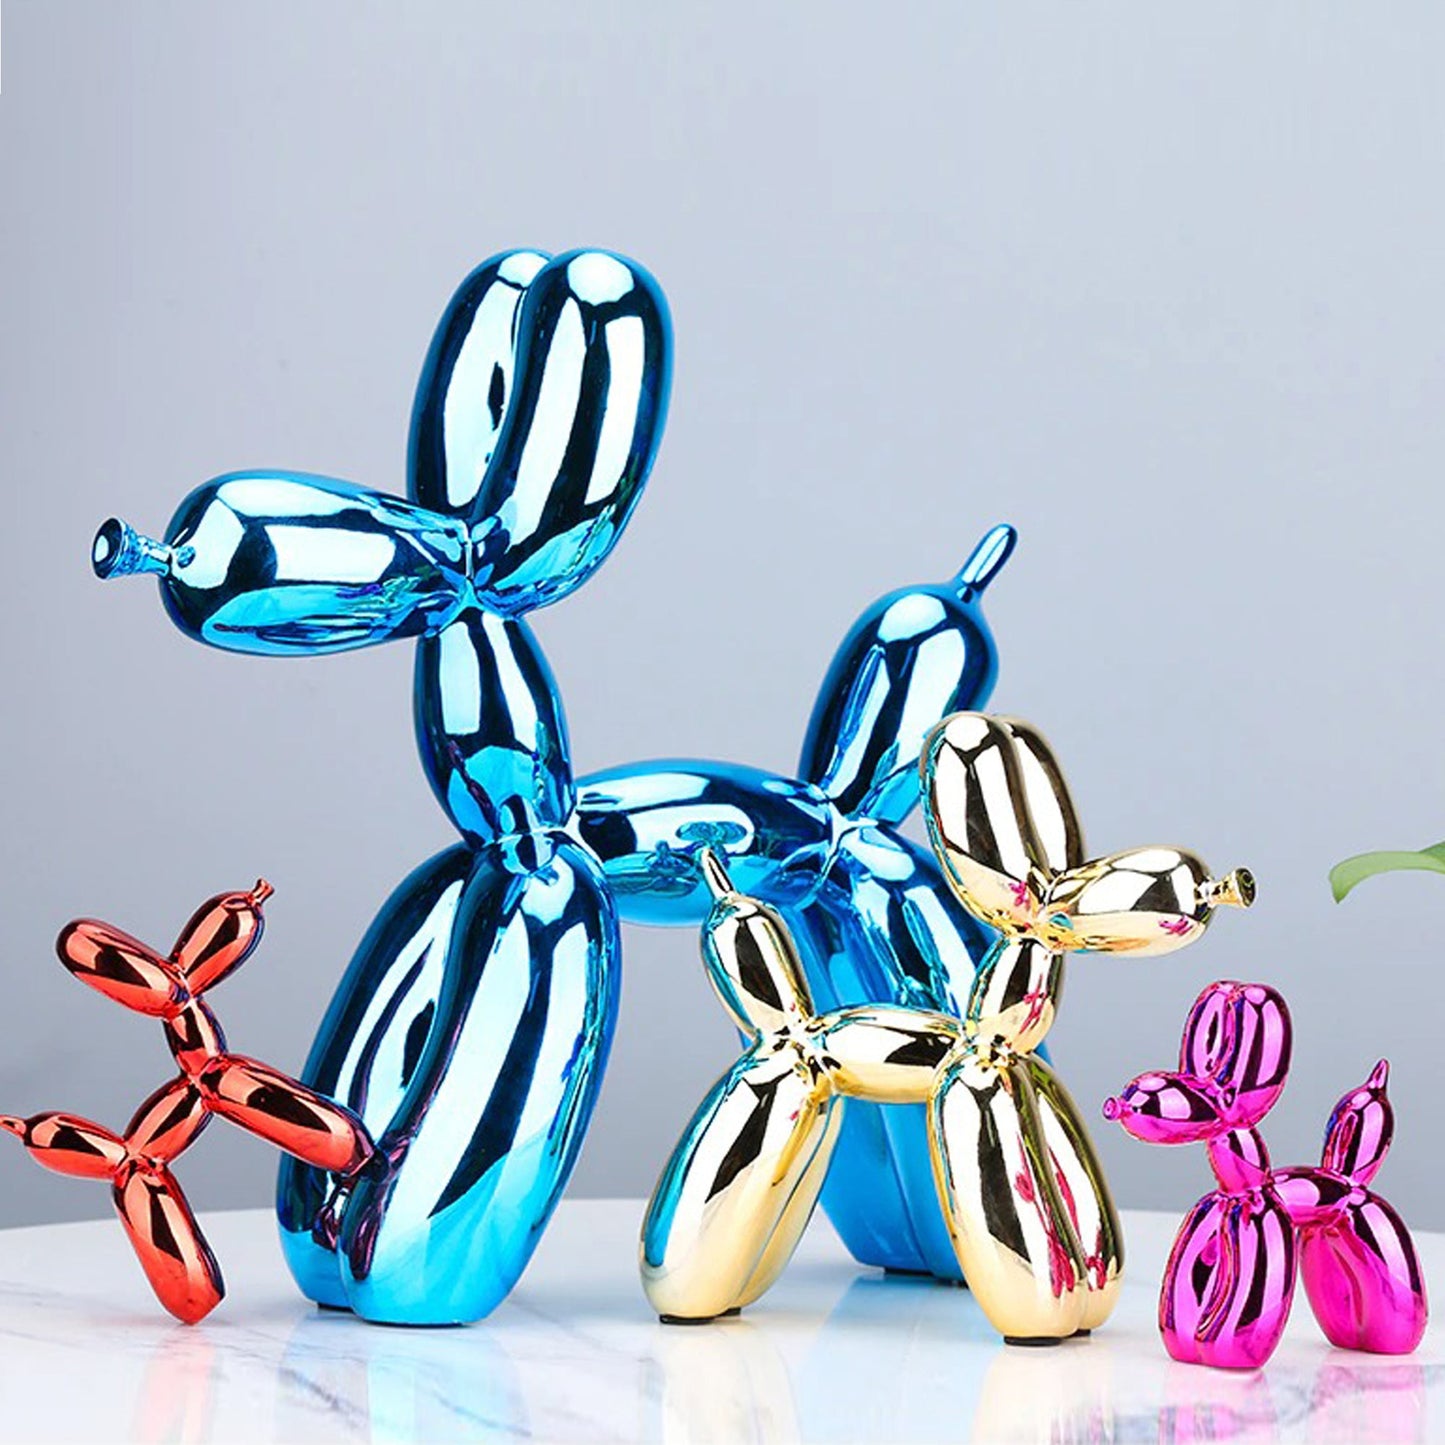 Electroplated Balloon Dog Sculptures Näytä tarkat tiedot 10 väriä